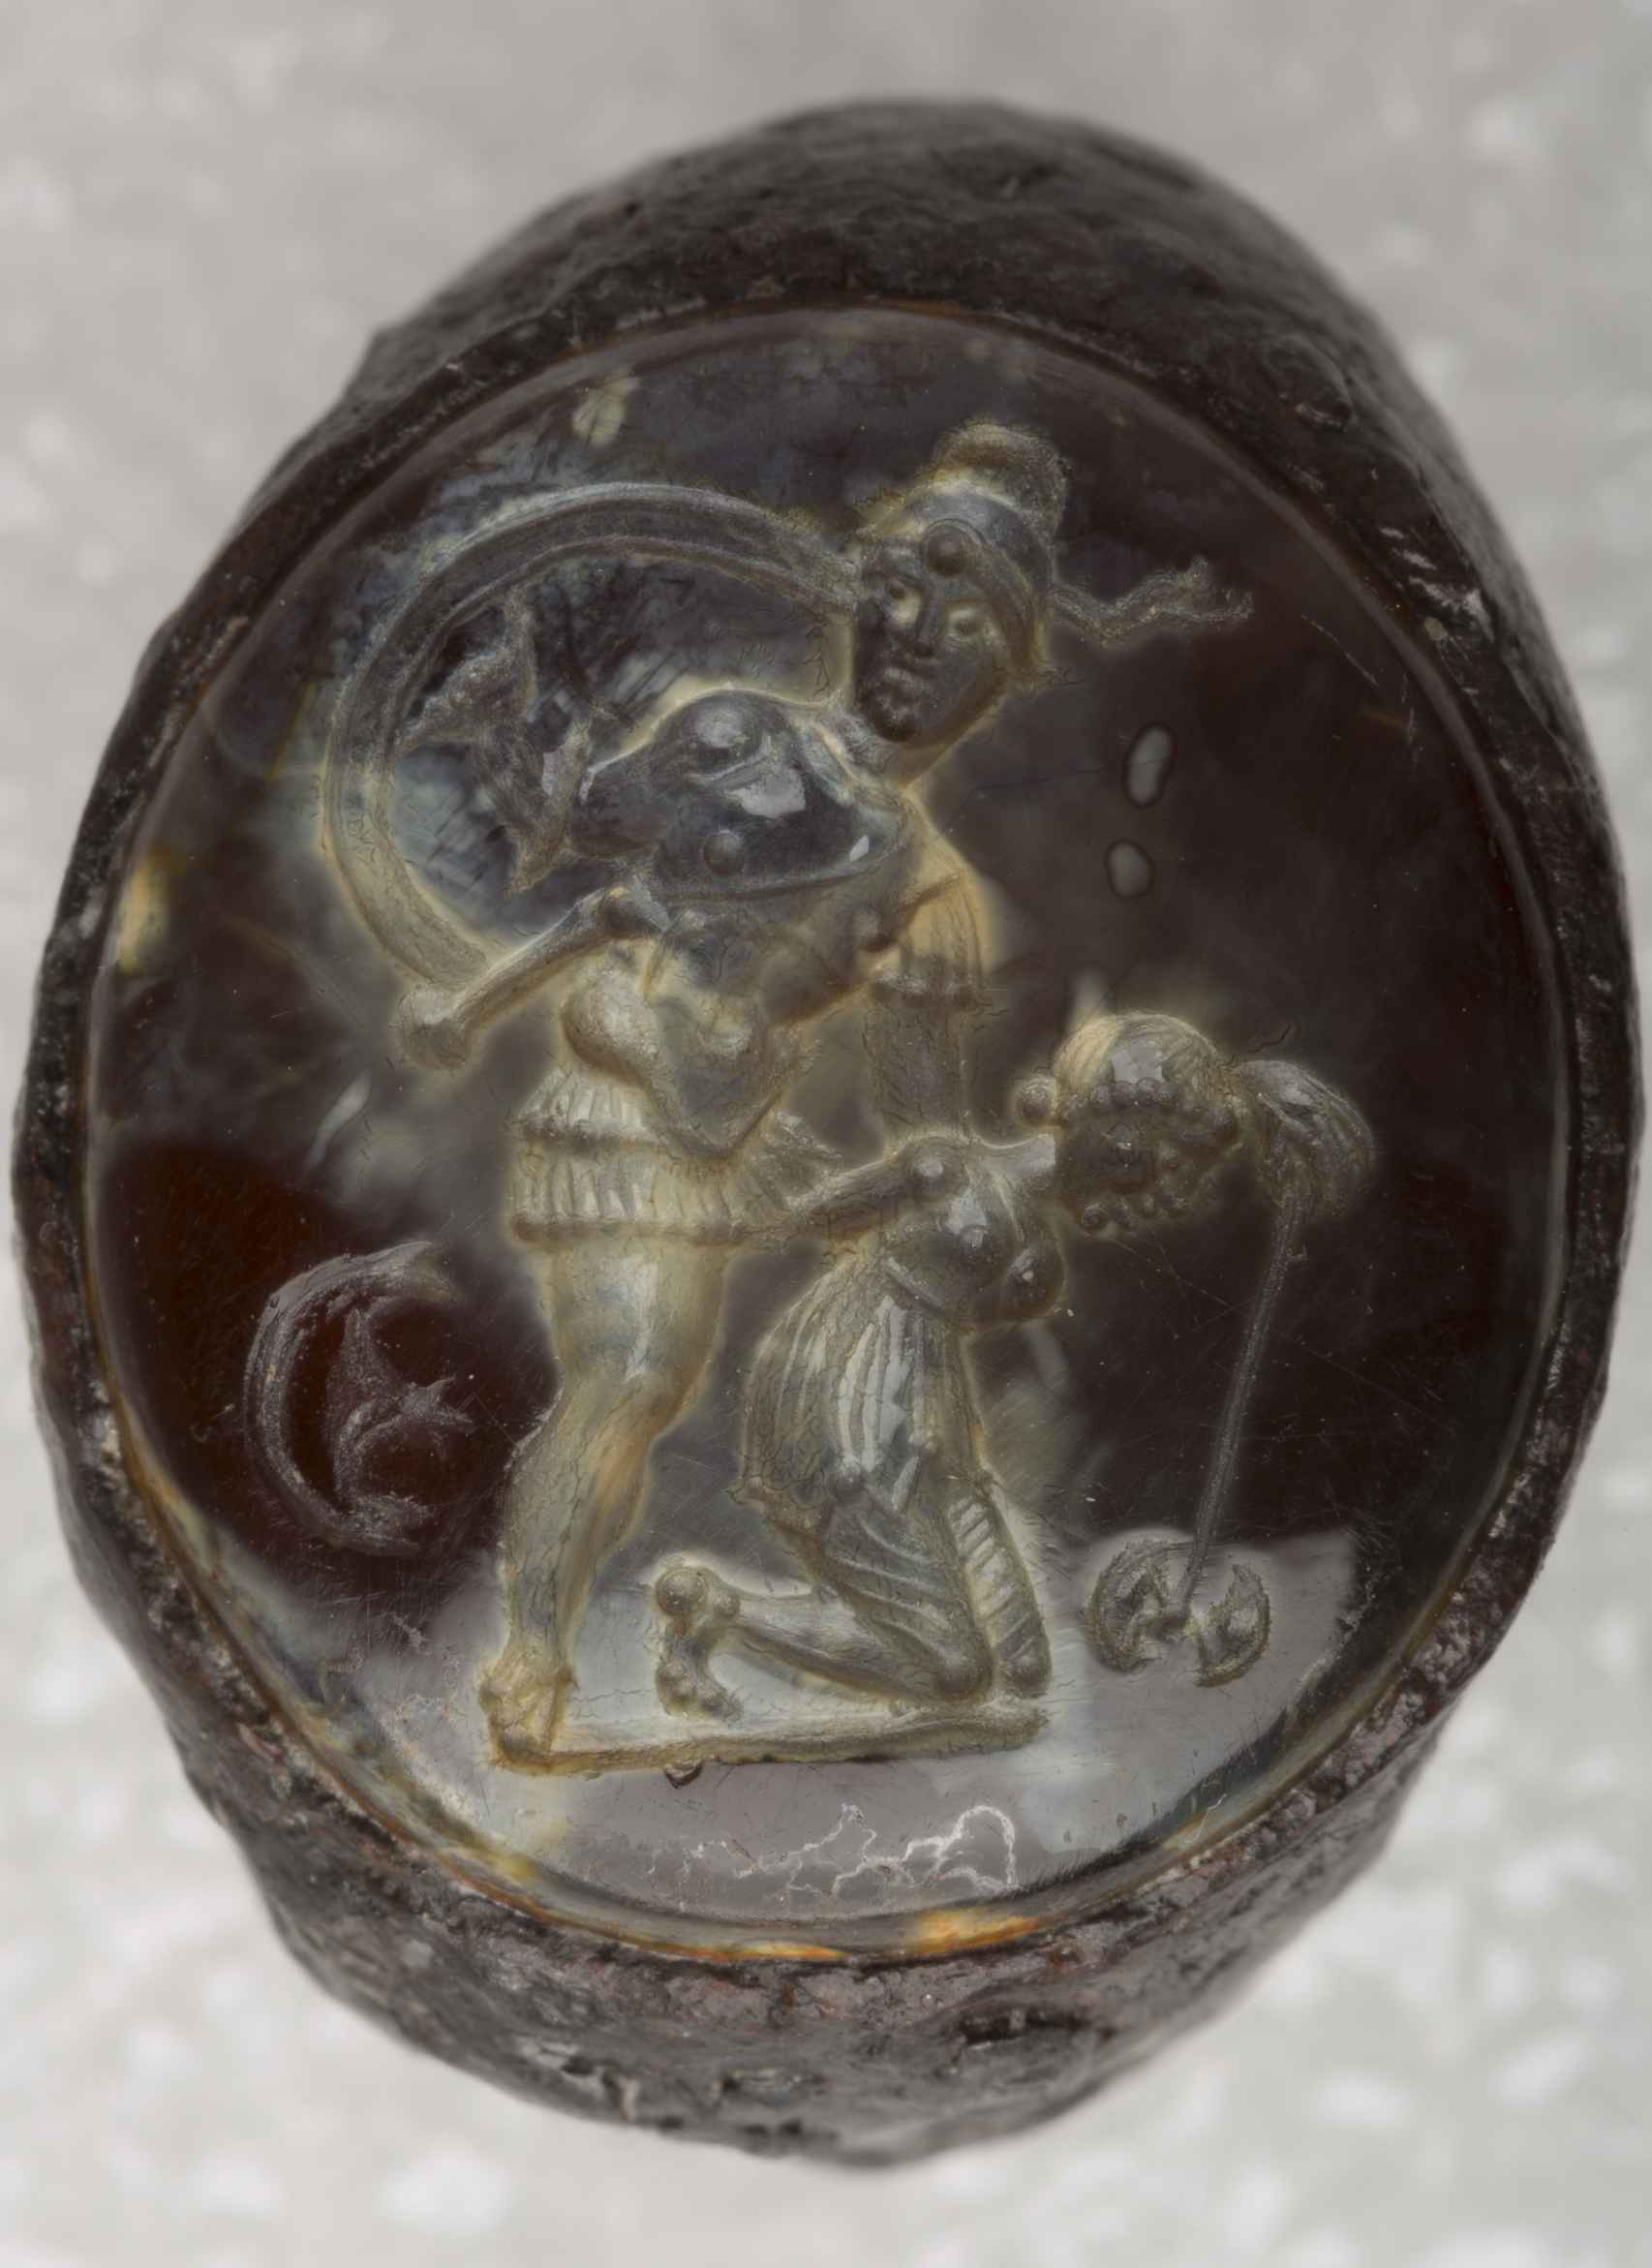 El anillo con gema semipreciosa y la escena de Aquiles con Pentesilea.